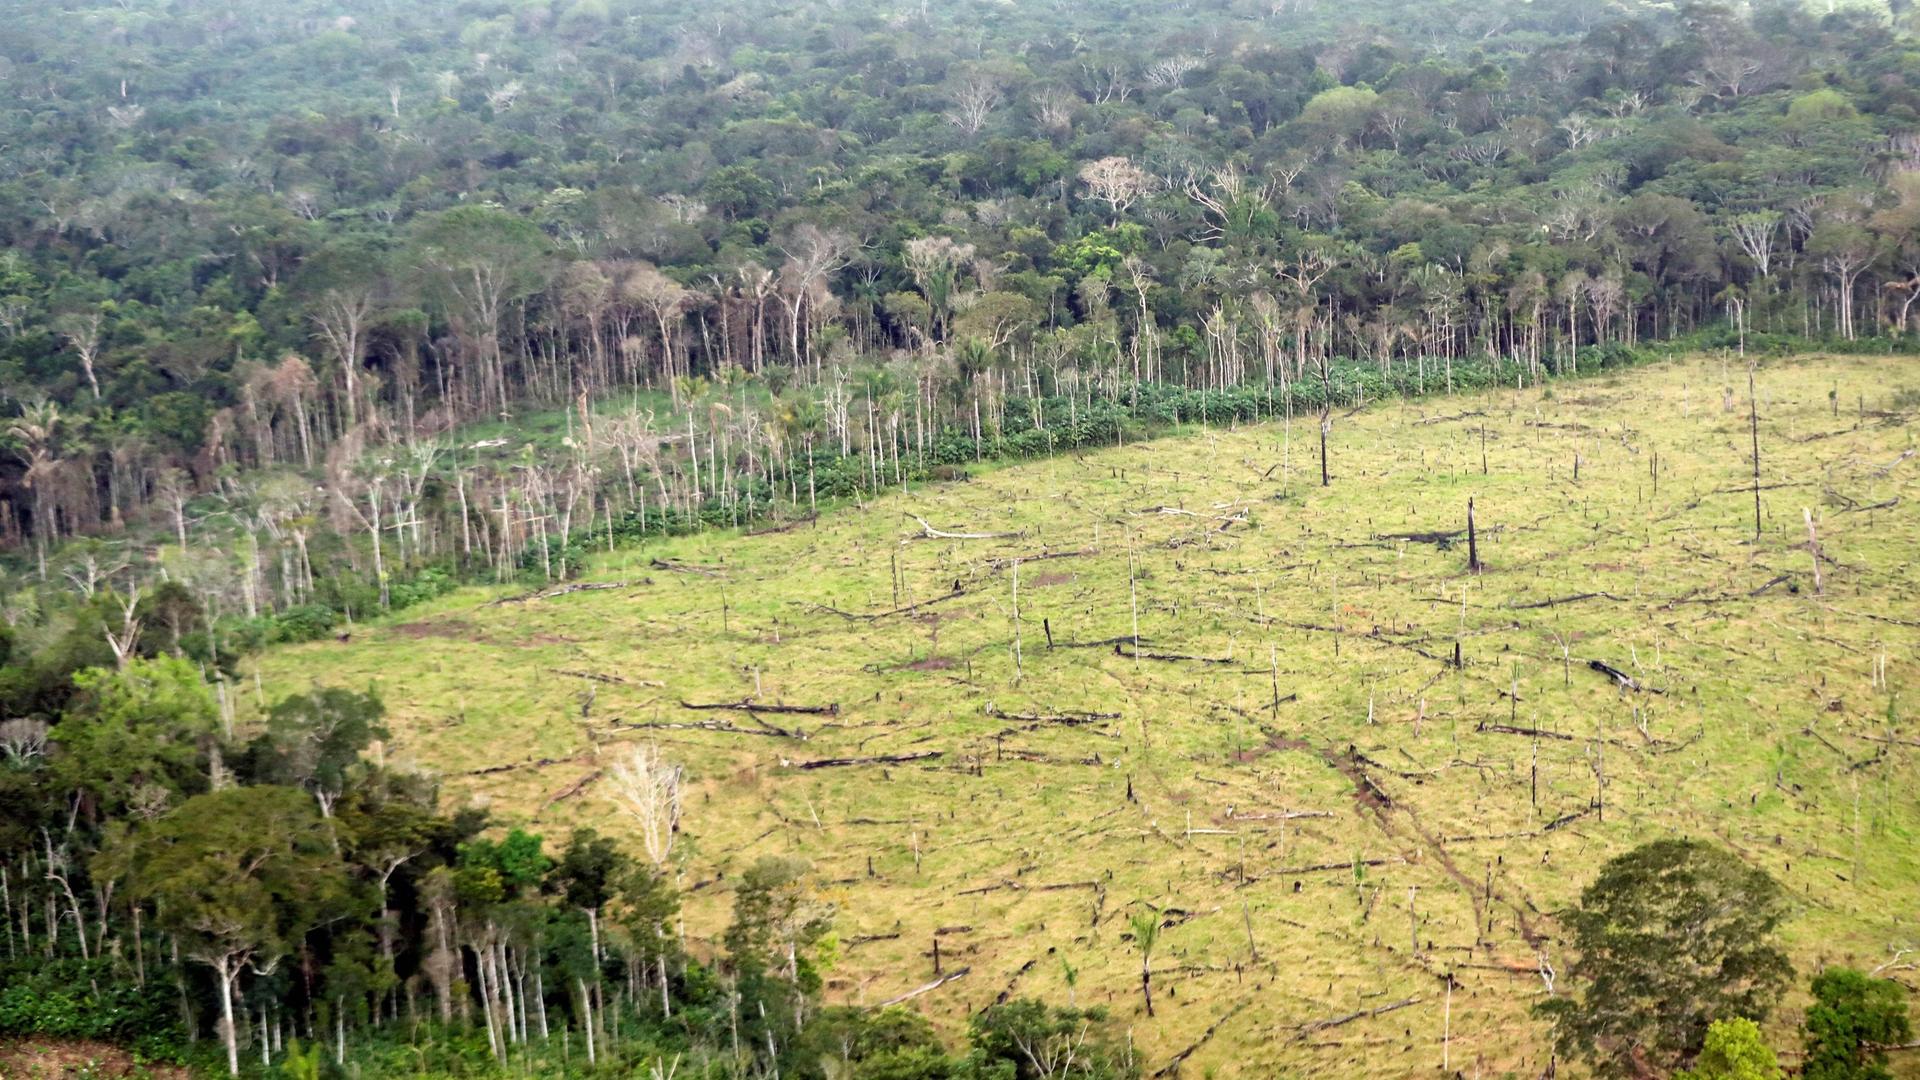 Ein abgeholztes Gebiet in Kolumbien. Die hellgrüne Fläche zeichnet sich deutlich gegen die dunkelgrünen Waldränder ab.